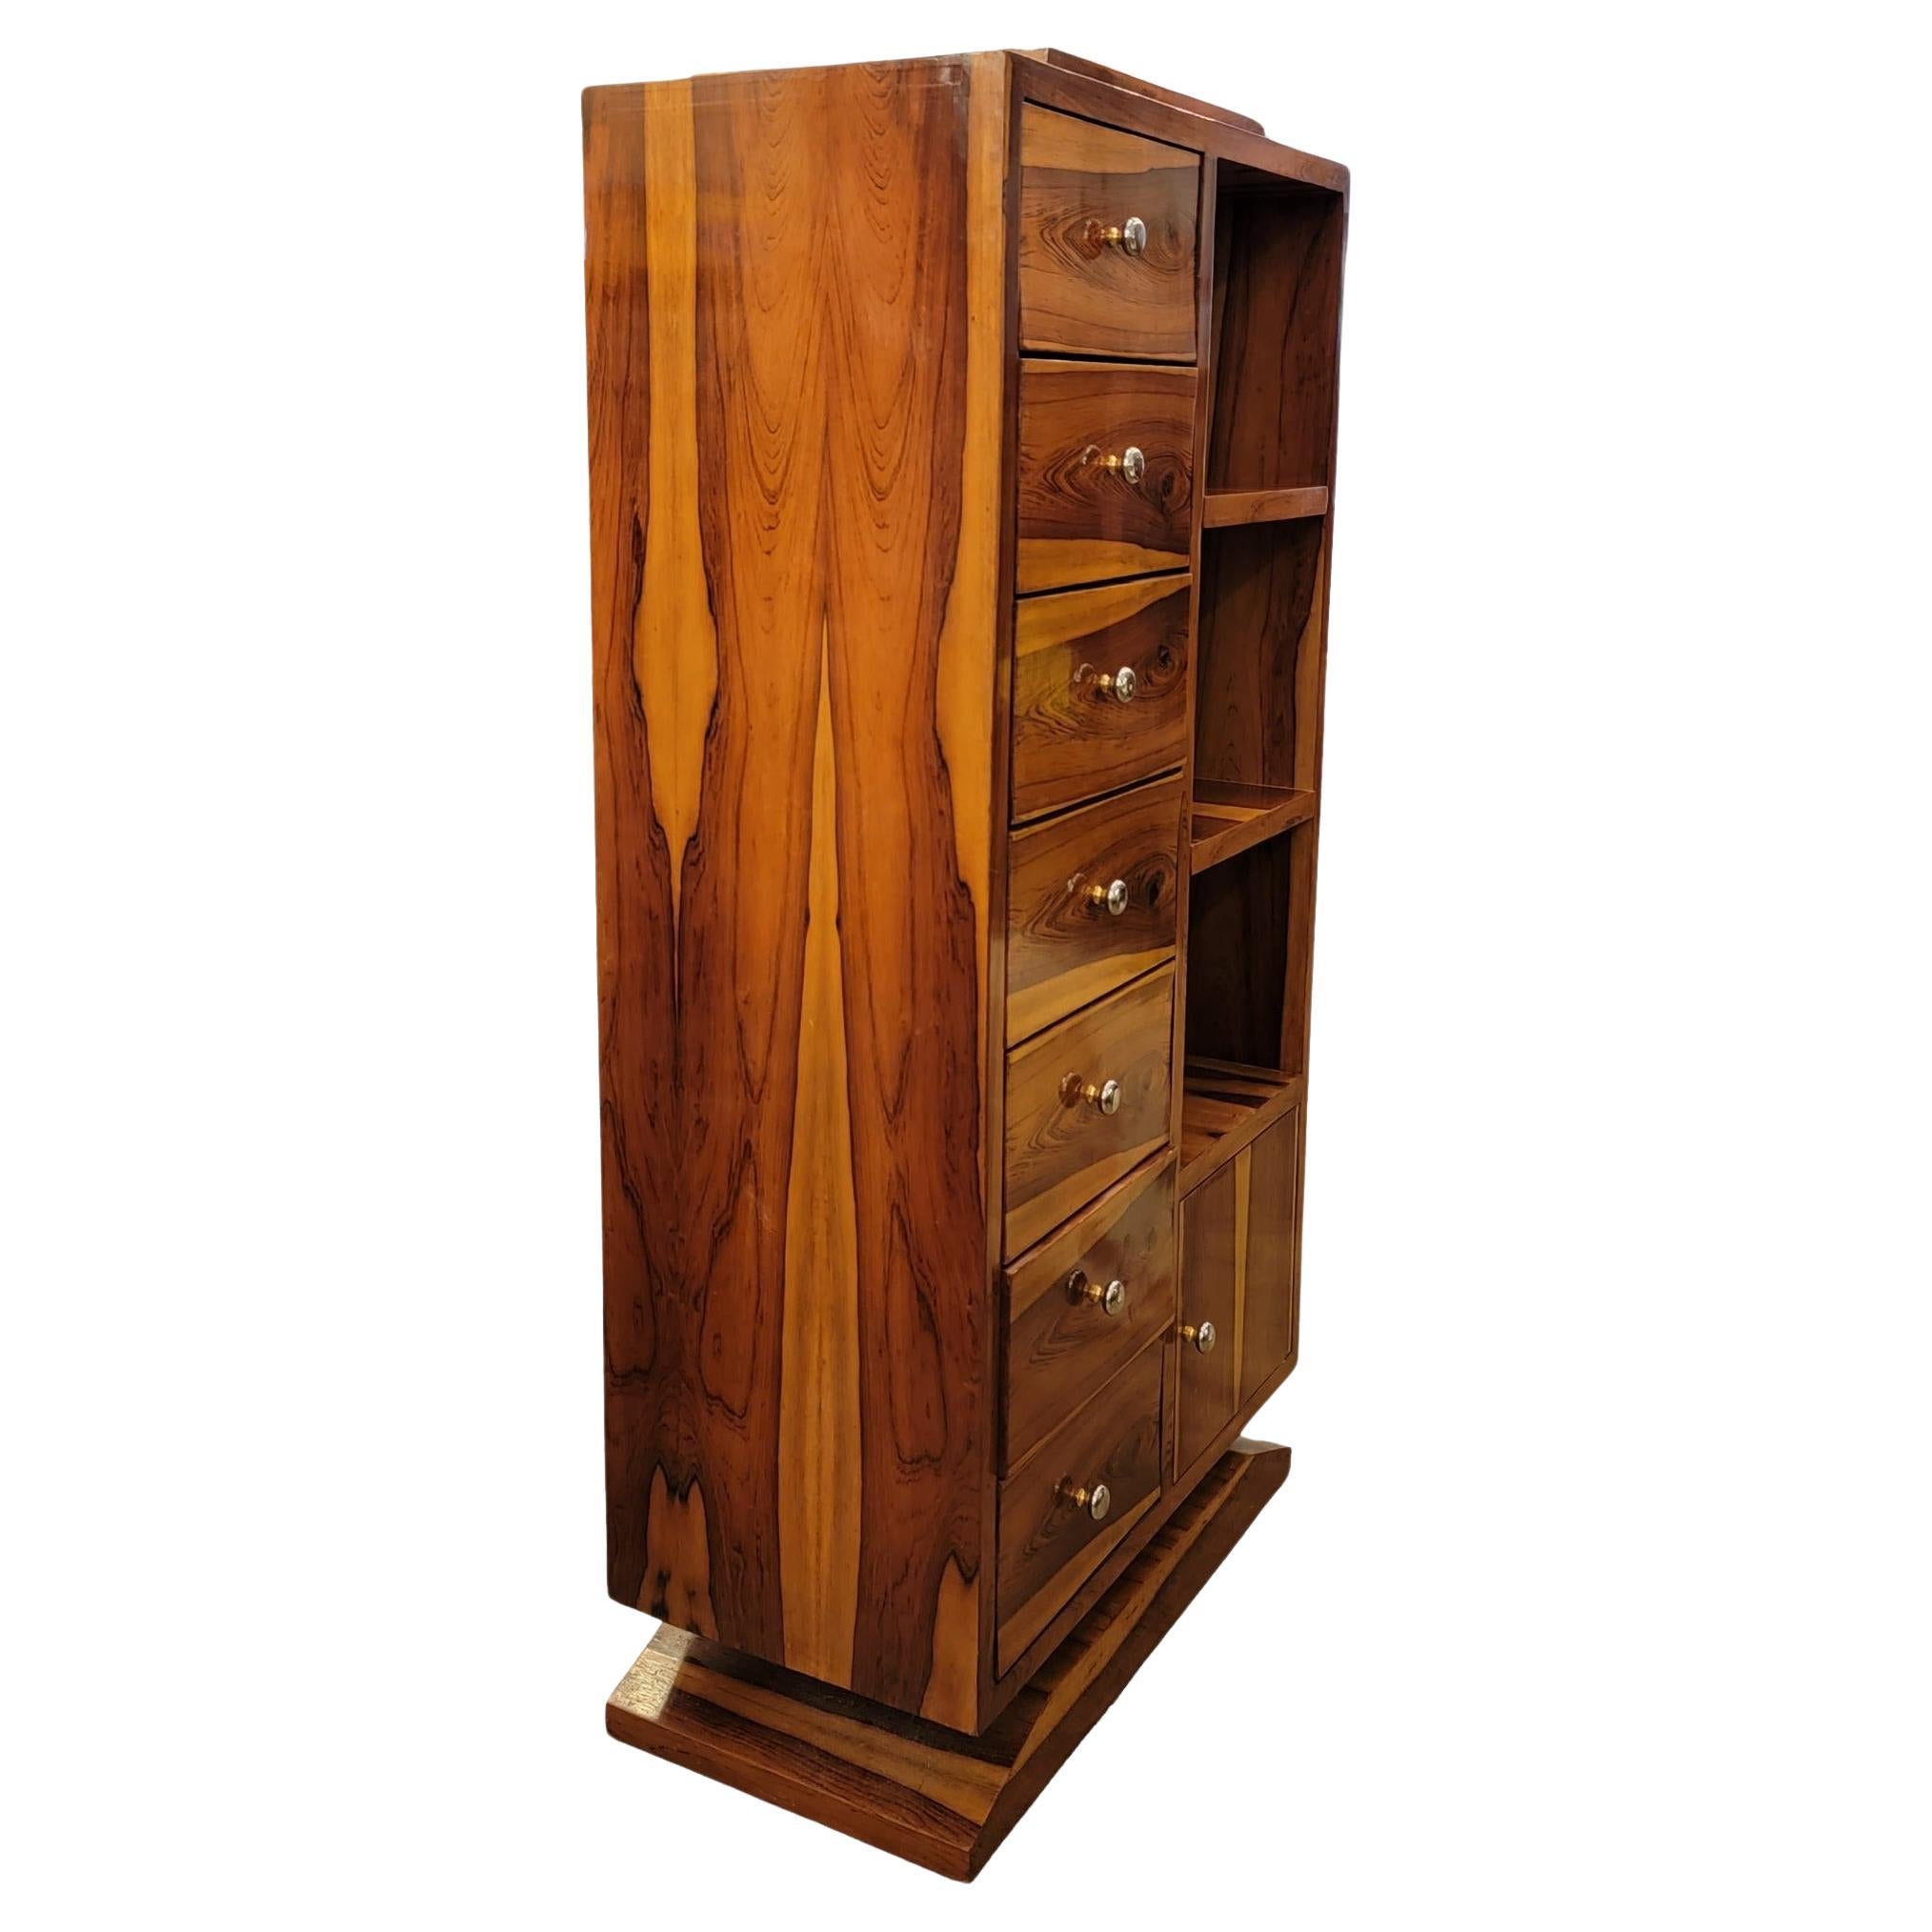 Jacaranda Brazillian Rosewood ettiger avec armoire au design très épuré et minimal. Beaucoup d'espace de stockage. Le bois poli est magnifique. Pièce d'aspect très propre et aux multiples usages. Mesure environ 61h x 31,5w x 15,75d
